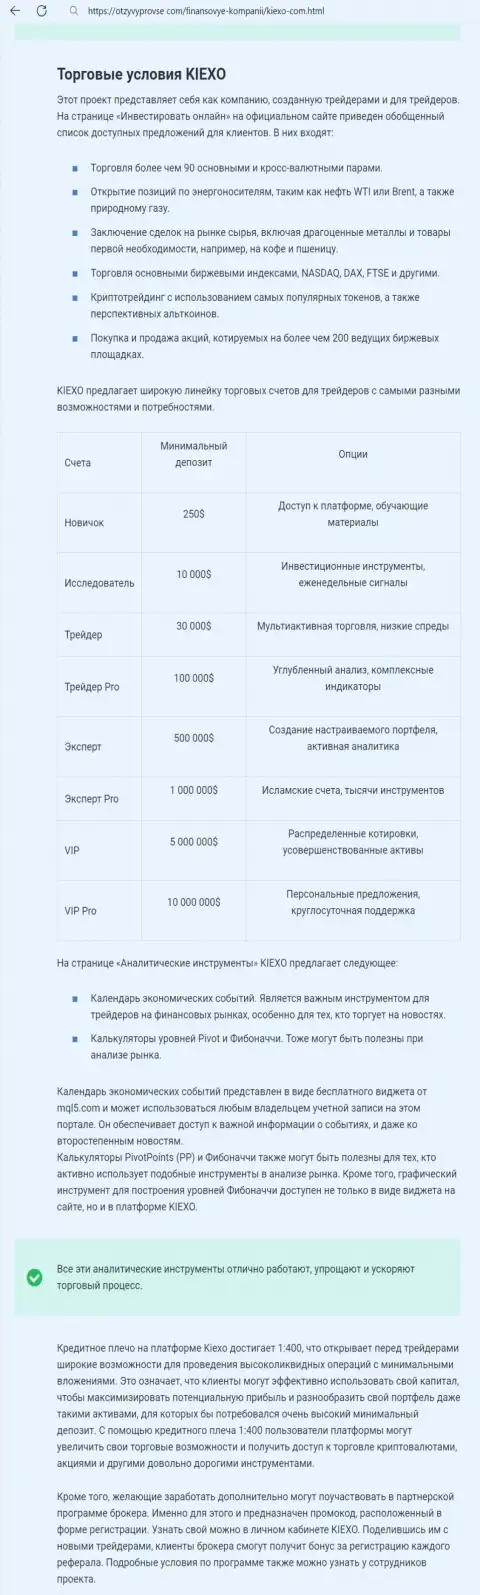 Разбор условий для спекулирования дилинговой компании Kiexo Com в статье на информационном портале otzyvyprovse com